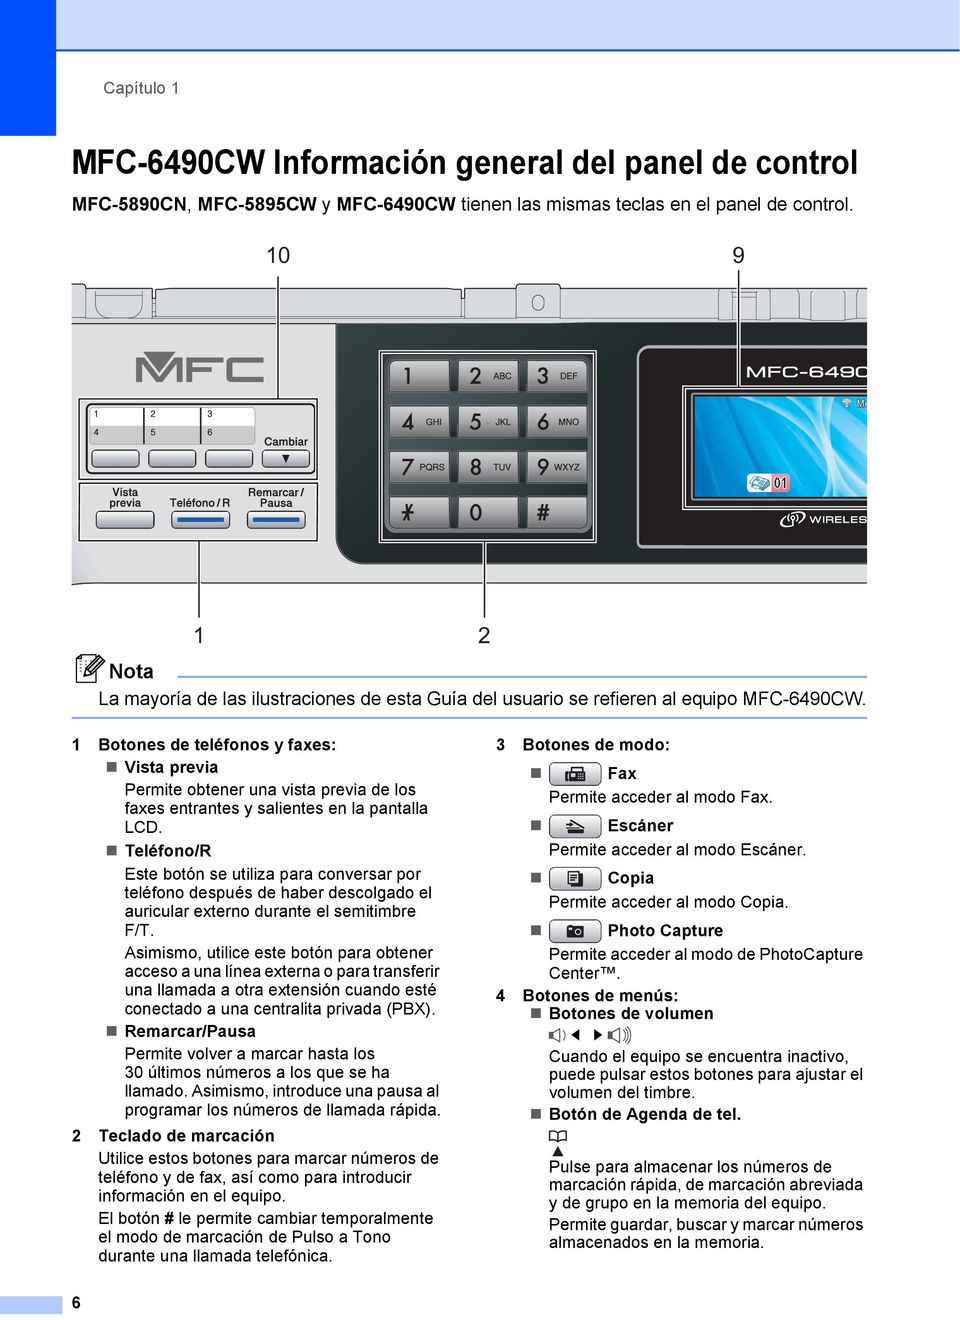 1 Botones de teléfonos y faxes: Vista previa Permite obtener una vista previa de los faxes entrantes y salientes en la pantalla LCD.